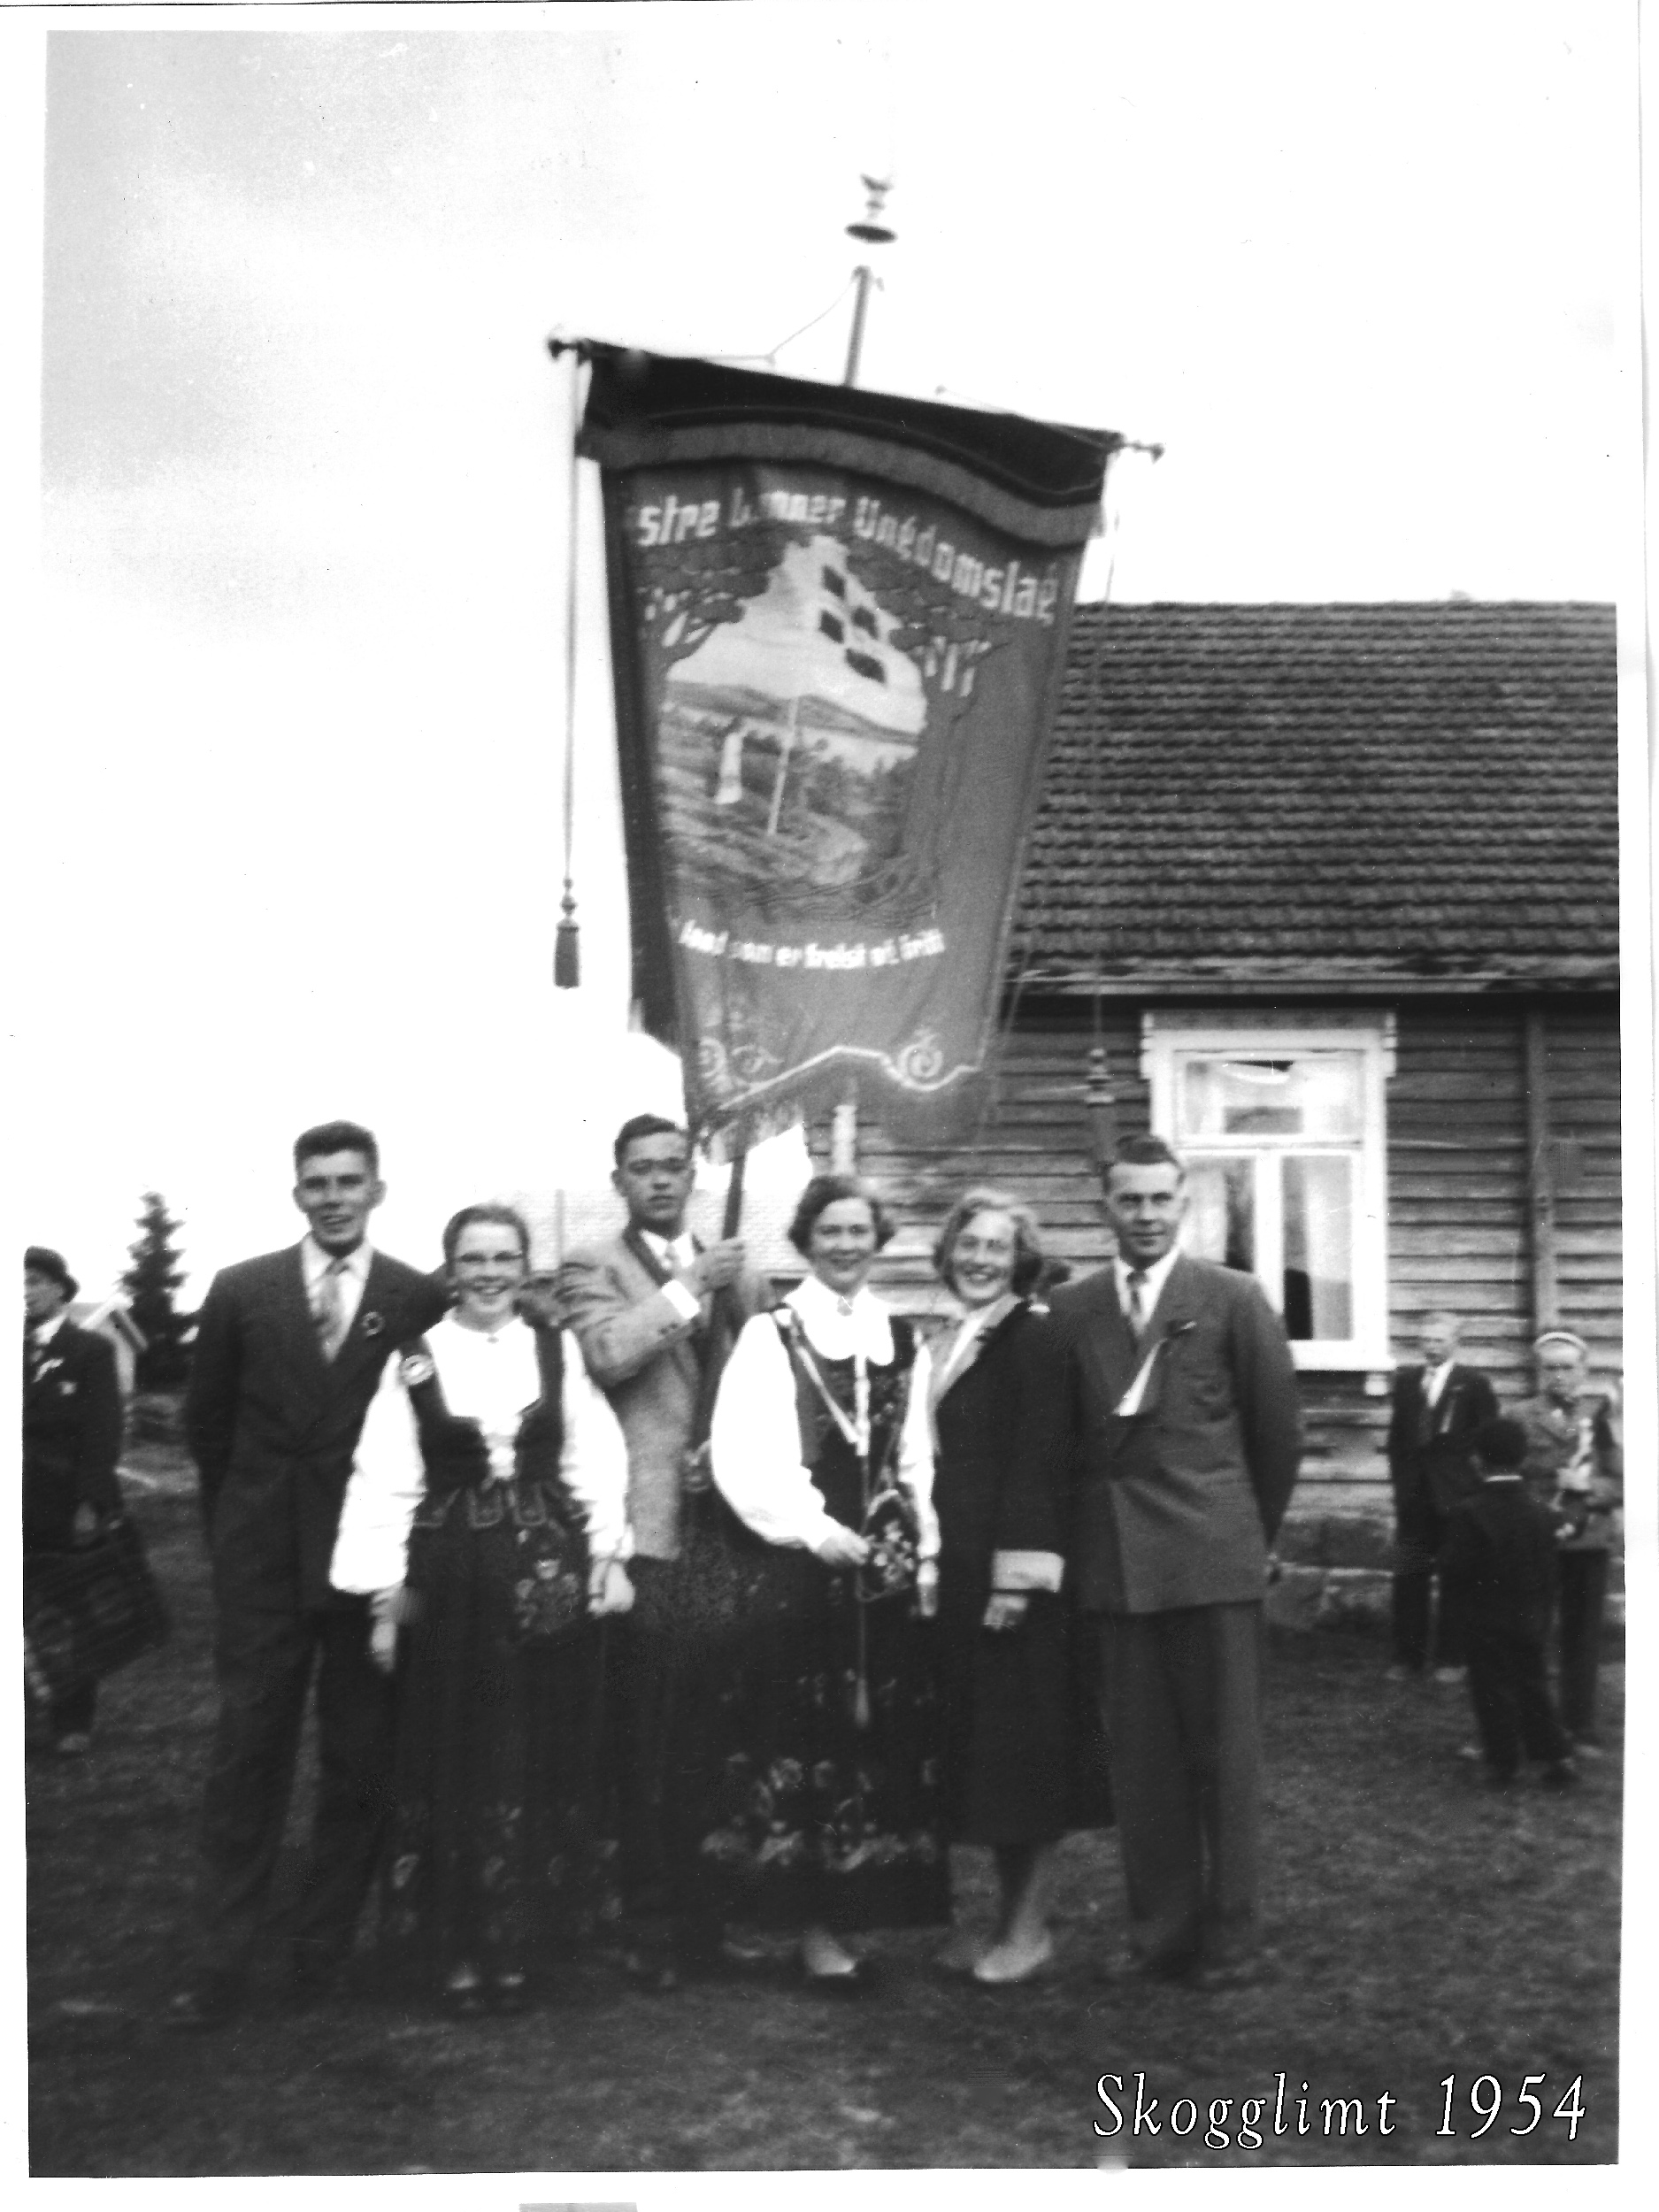 Fra venstre: Lars Ballangrud, Anni Finstad, Ivar Svensbråten, Solveig Sundvoll, Åse Svensbråten, f. Granli, og Mikael Kiserud. Bak til høyre i konfirmasjonsdress Thorstein S. Roen. Bildet er utlånt av Åge M. Strand.